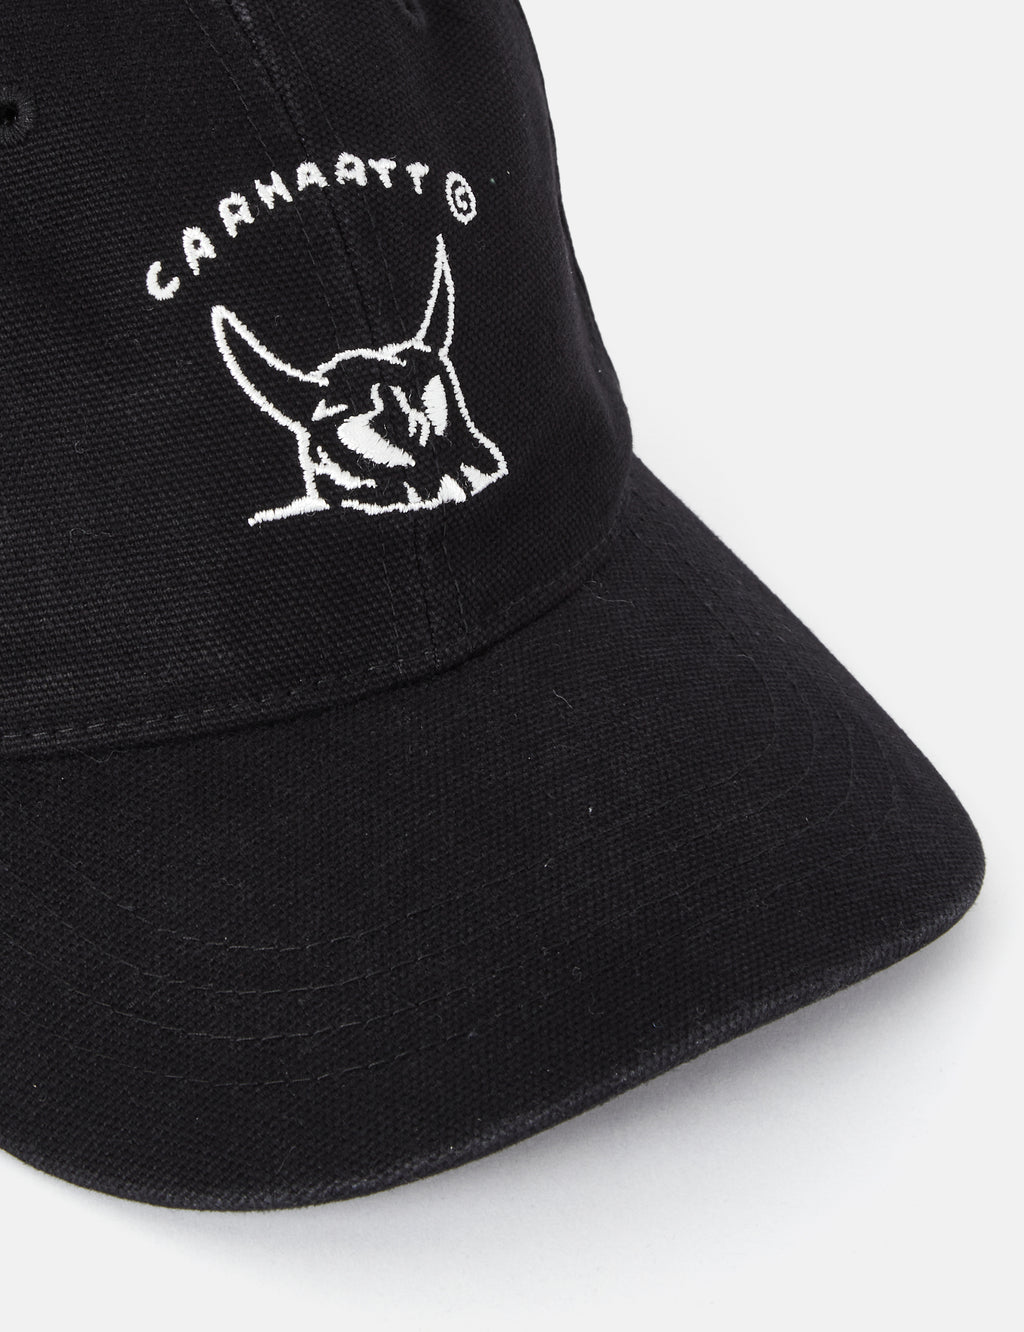 Gorra Carhartt WIP New Frontier Cap Black